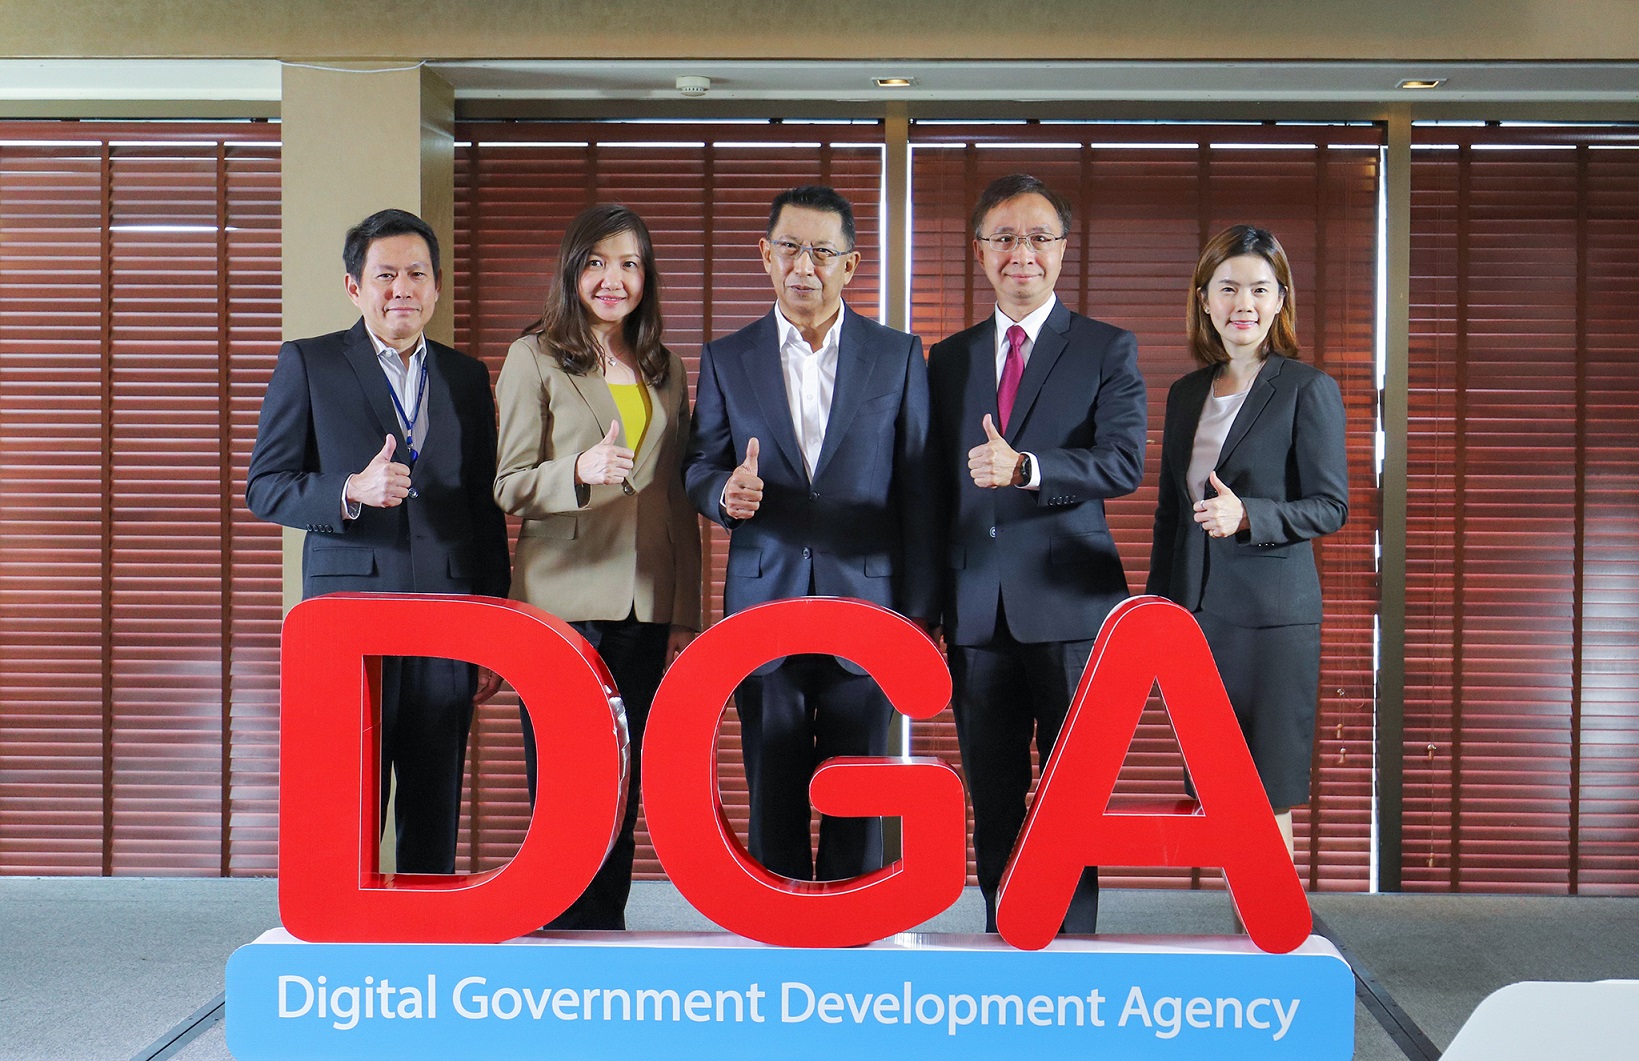 ภาพข่าว: DGA เปิดตัวผู้บริหารใหม่ ตั้งเป้า 3 ปี เปลี่ยนภาครัฐสู่ดิจิทัล เดินหน้ายกระดับบริการที่มีคุณค่าให้ประชาชน